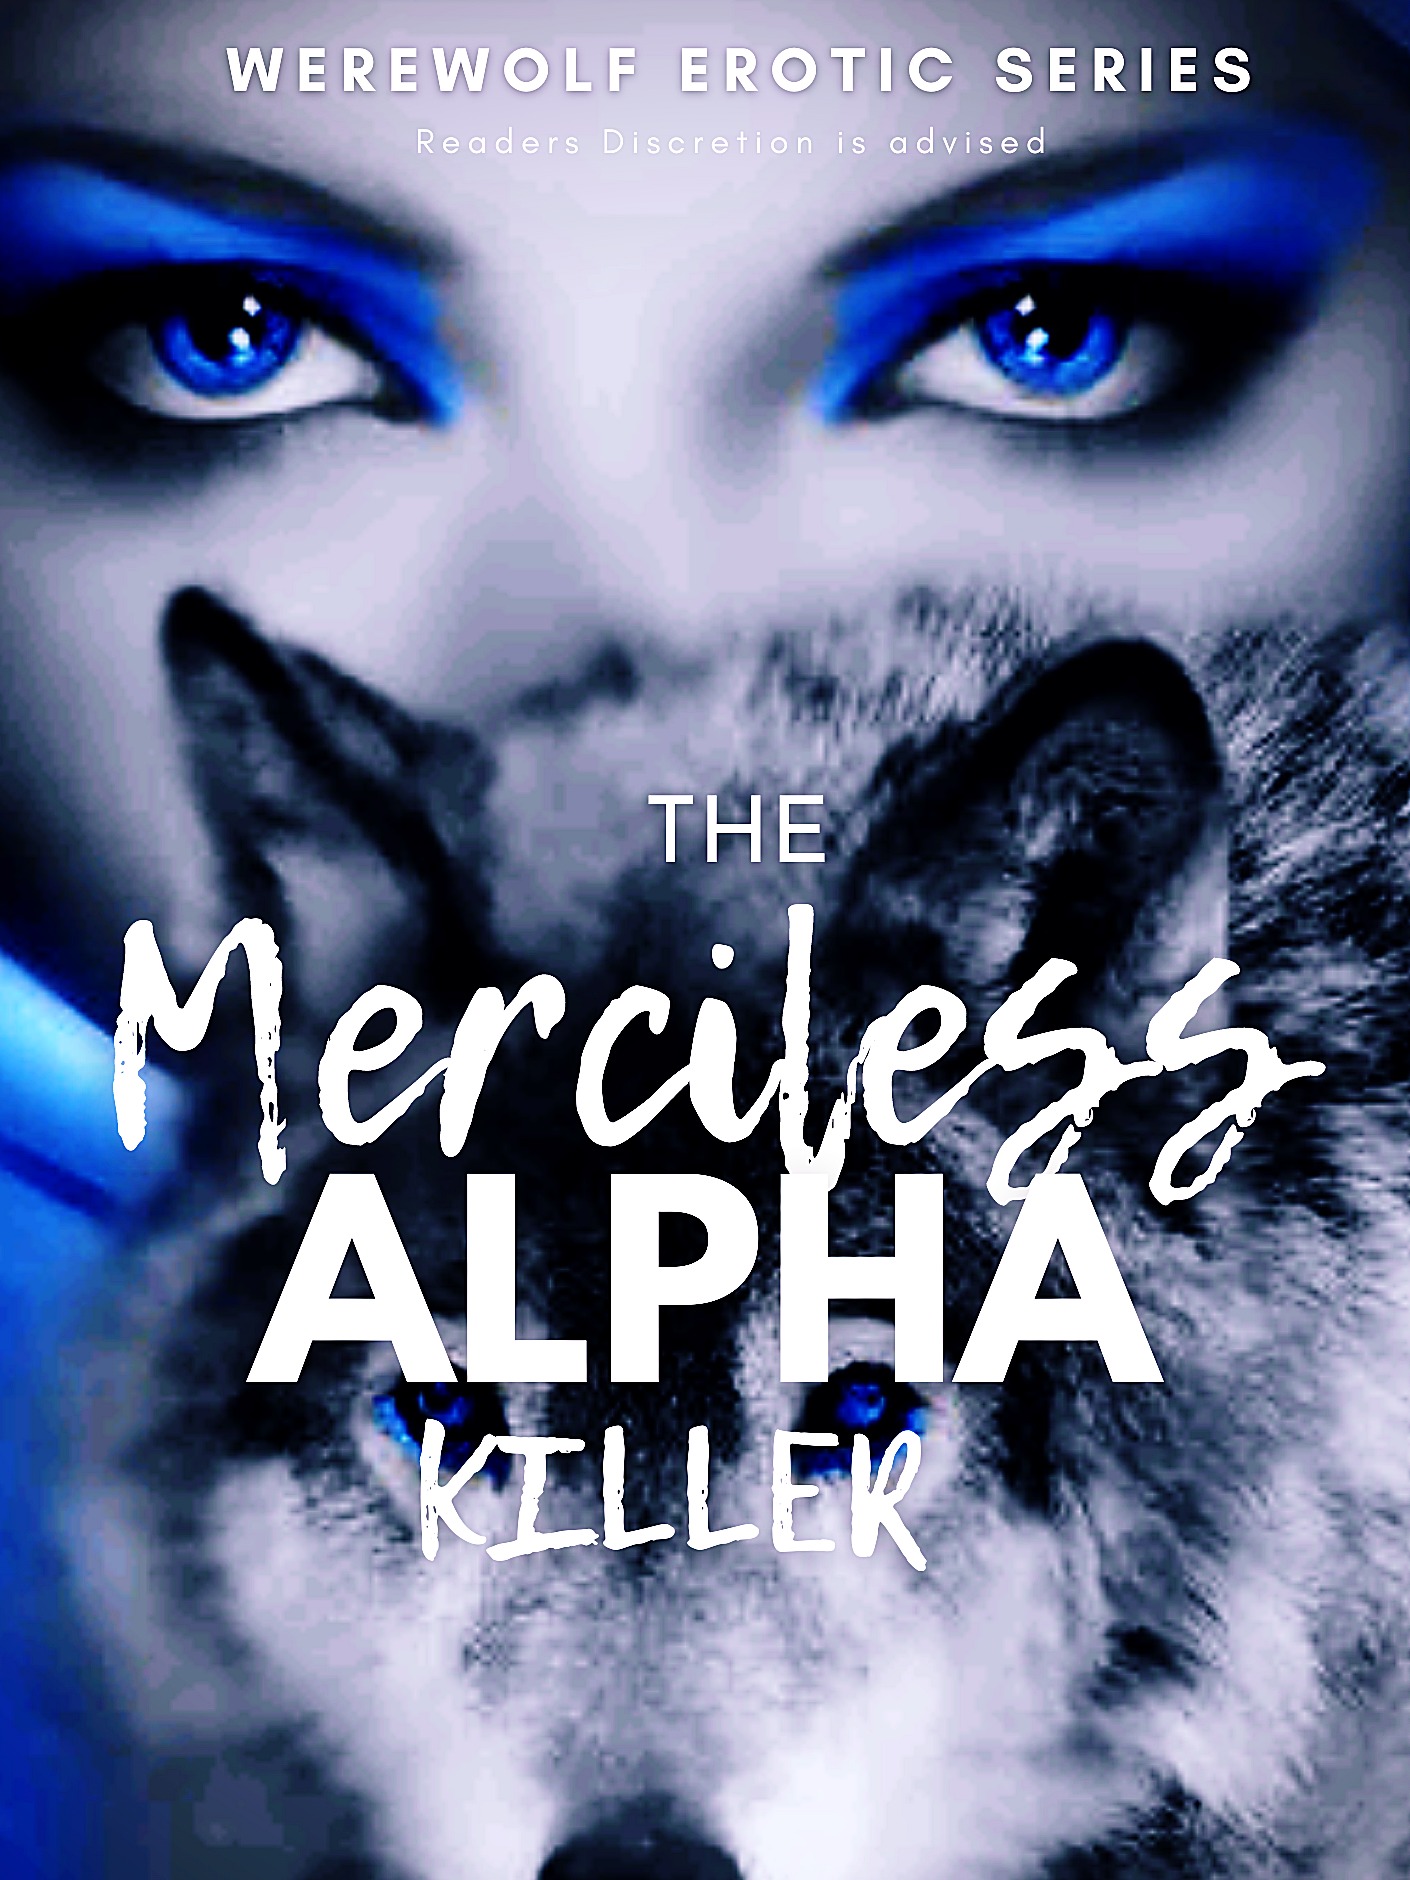 The Merciless Alpha Killer